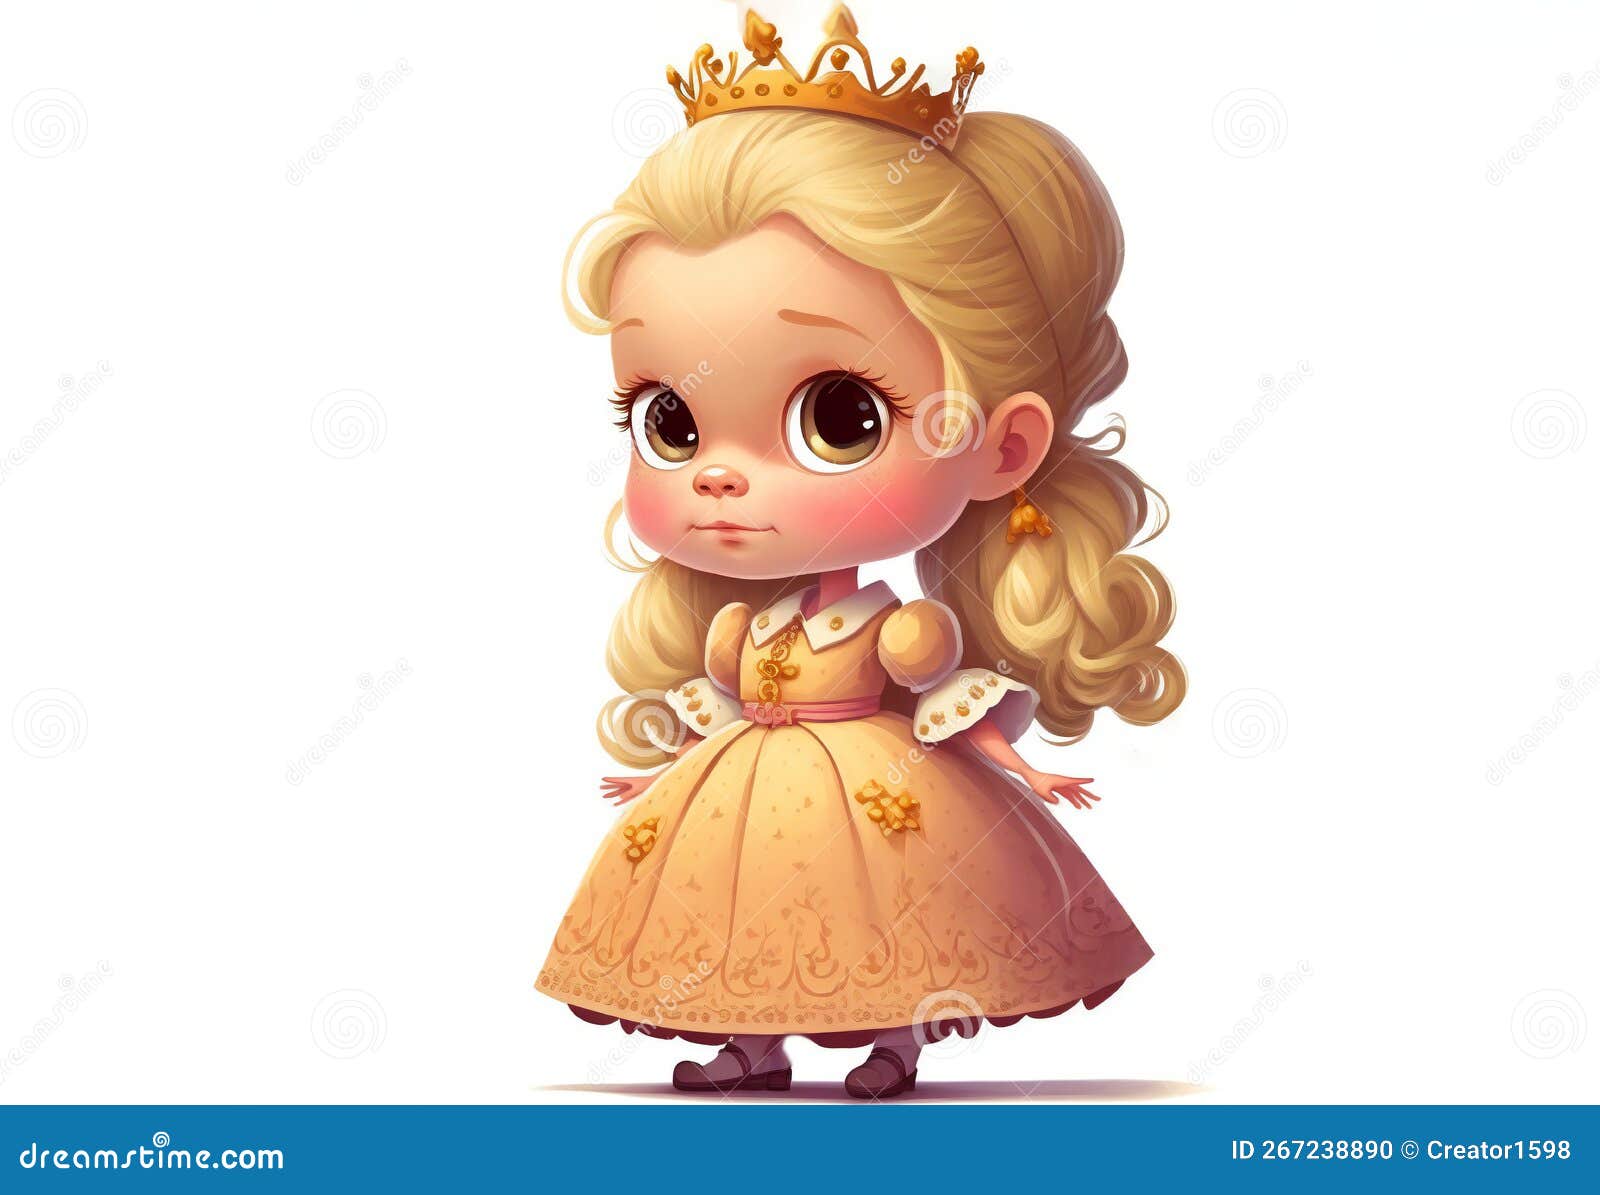 Principessa carina con bella acconciatura bambina in abito corona sulla  testa personaggio divertente illustrazione per bambini poster vivaio